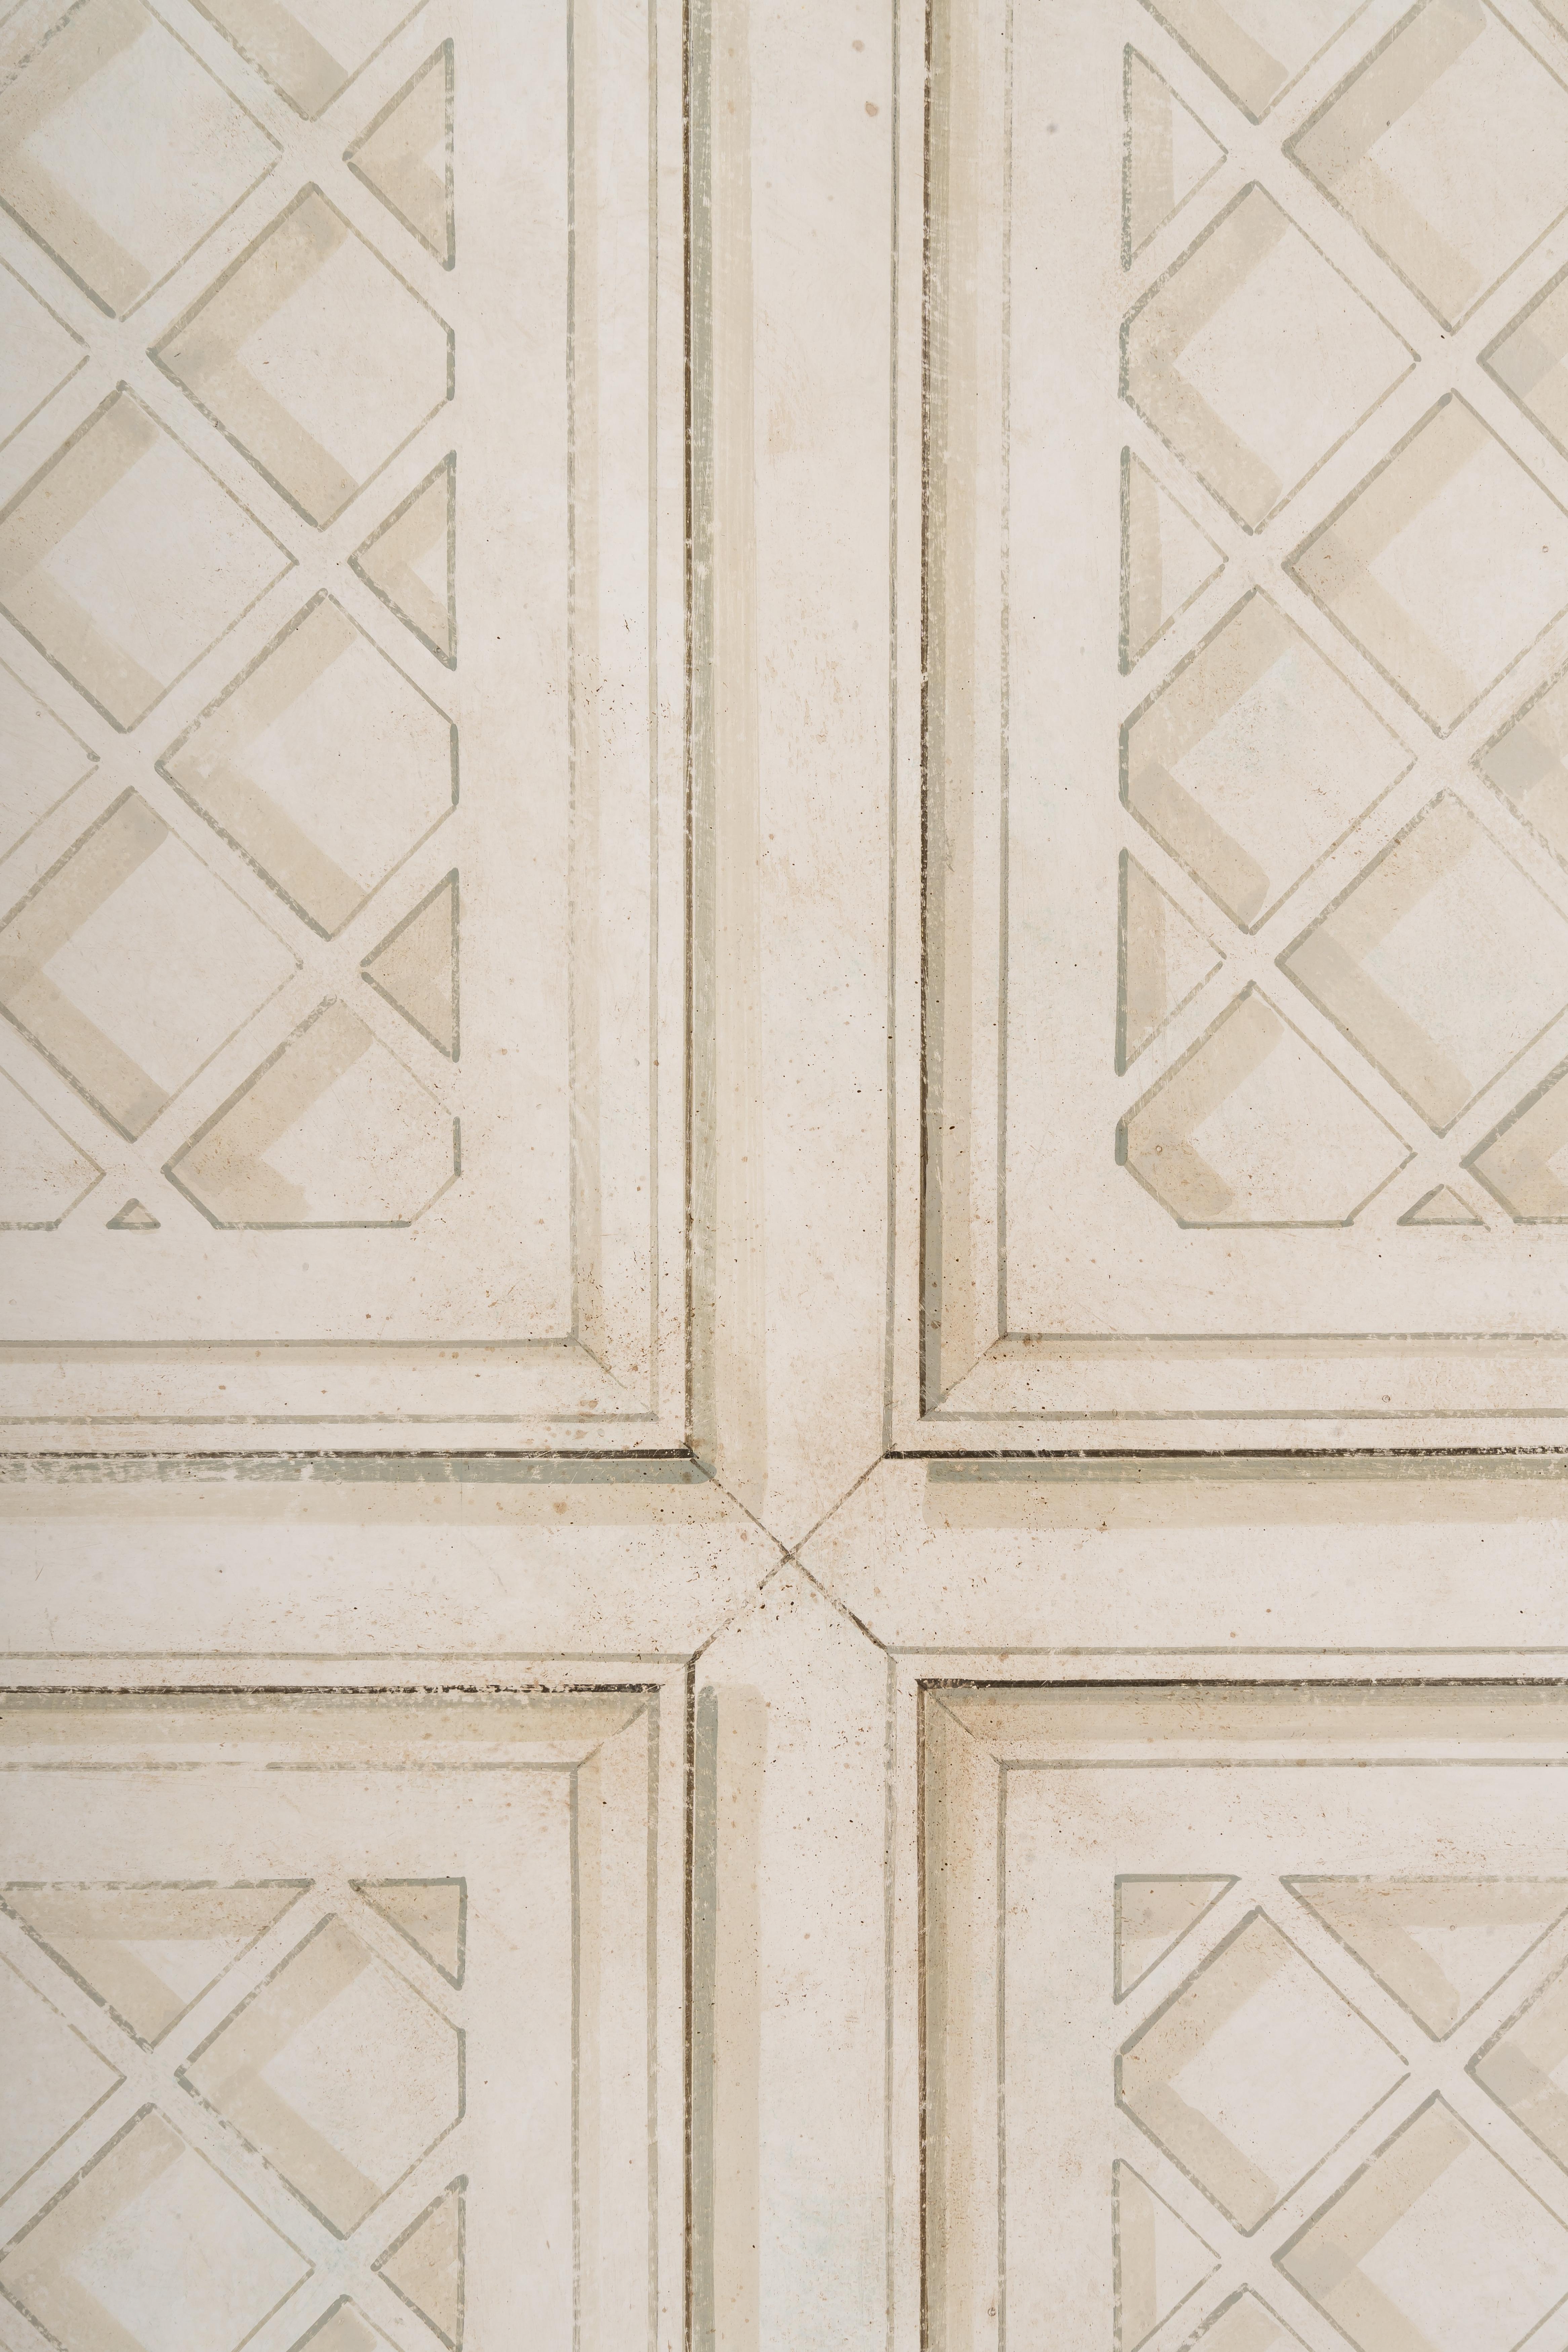 Aus unserer handbemalten Furniture Collection'S freuen wir uns, Ihnen unser Criss-Cross Panel vorzustellen.
Ein exquisites dekoratives Holzpaneel mit einem Spaliermuster in einer sanften Farbpalette aus Weiß und hellen Taupetönen. 
Dieses schöne